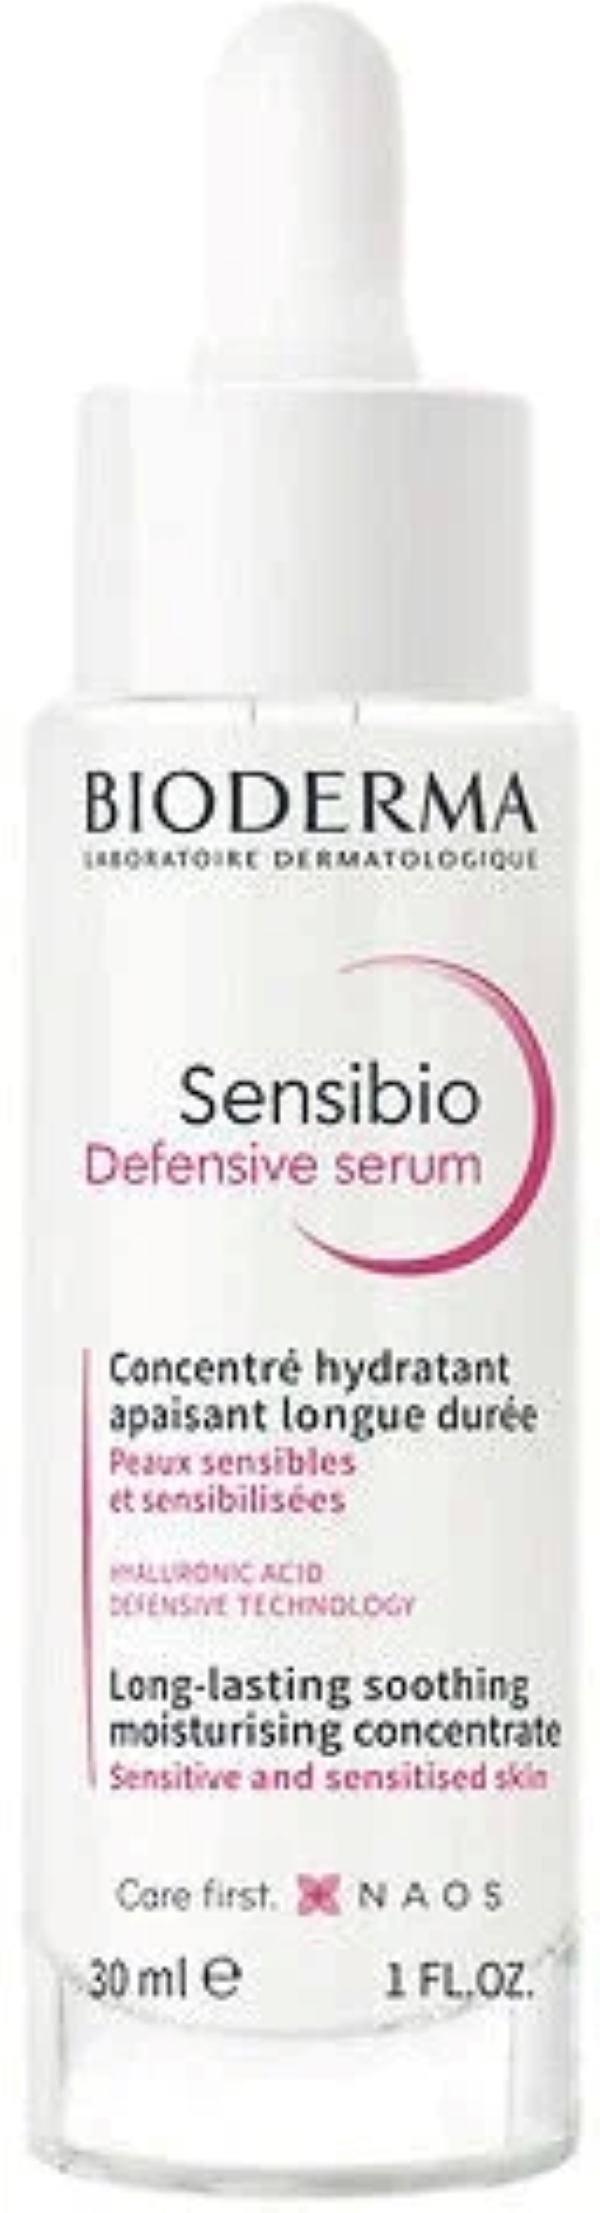 Купить Сыворотка для лица Bioderma Sensibio Defensive для чувствительной кожи, 30 мл